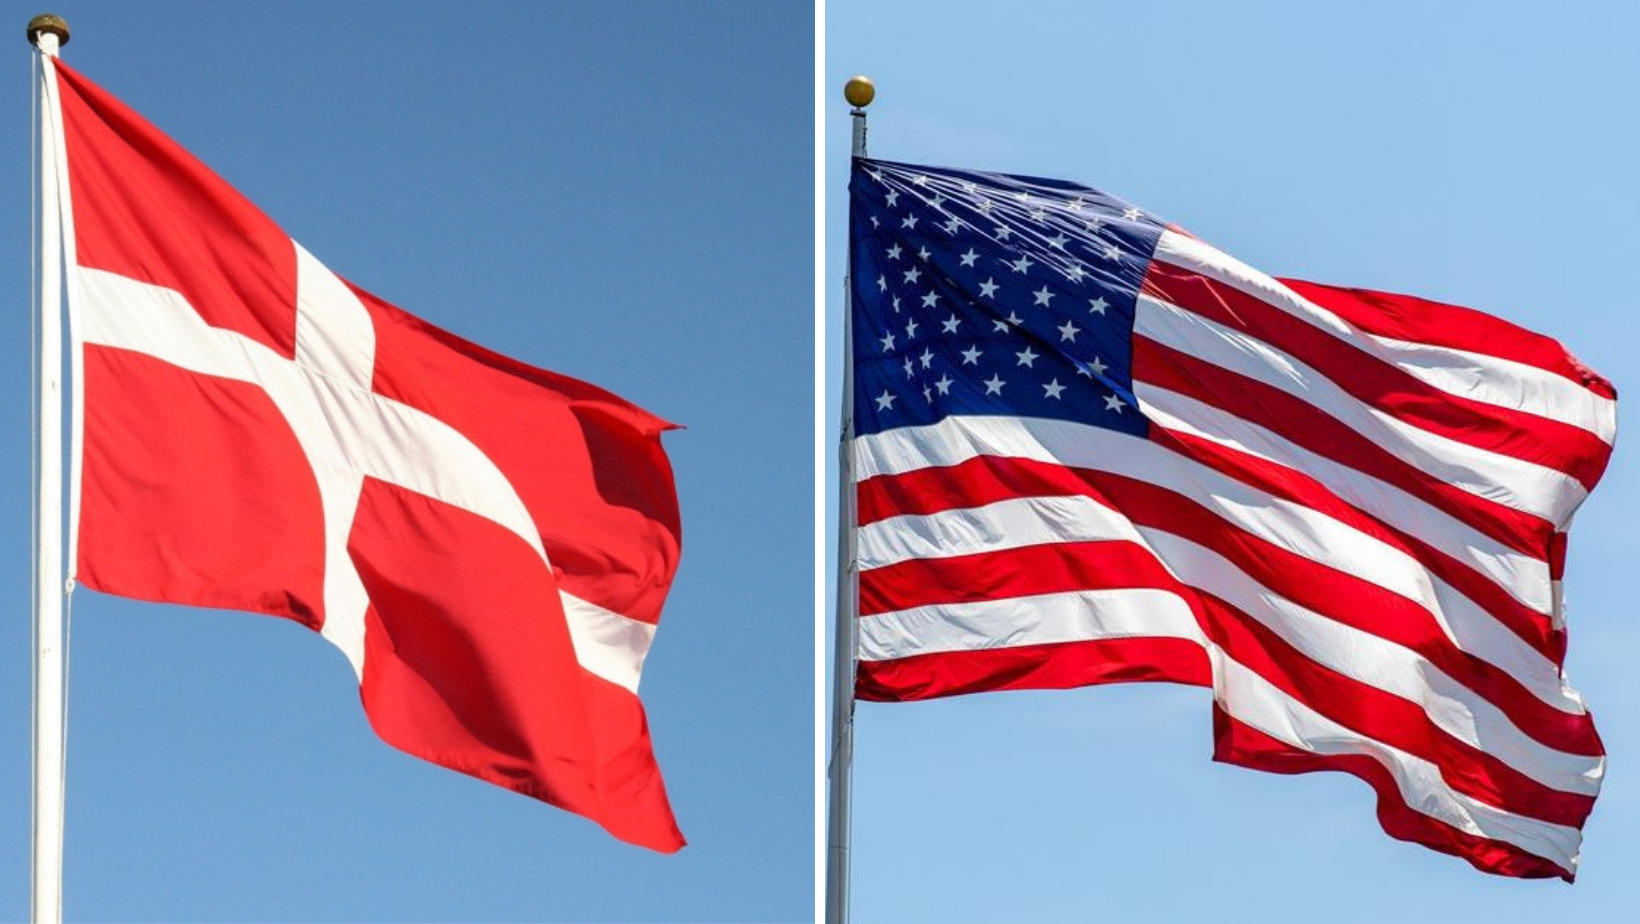 Banderas de Dinamarca y Estados Unidos. Foto: fuente externa.